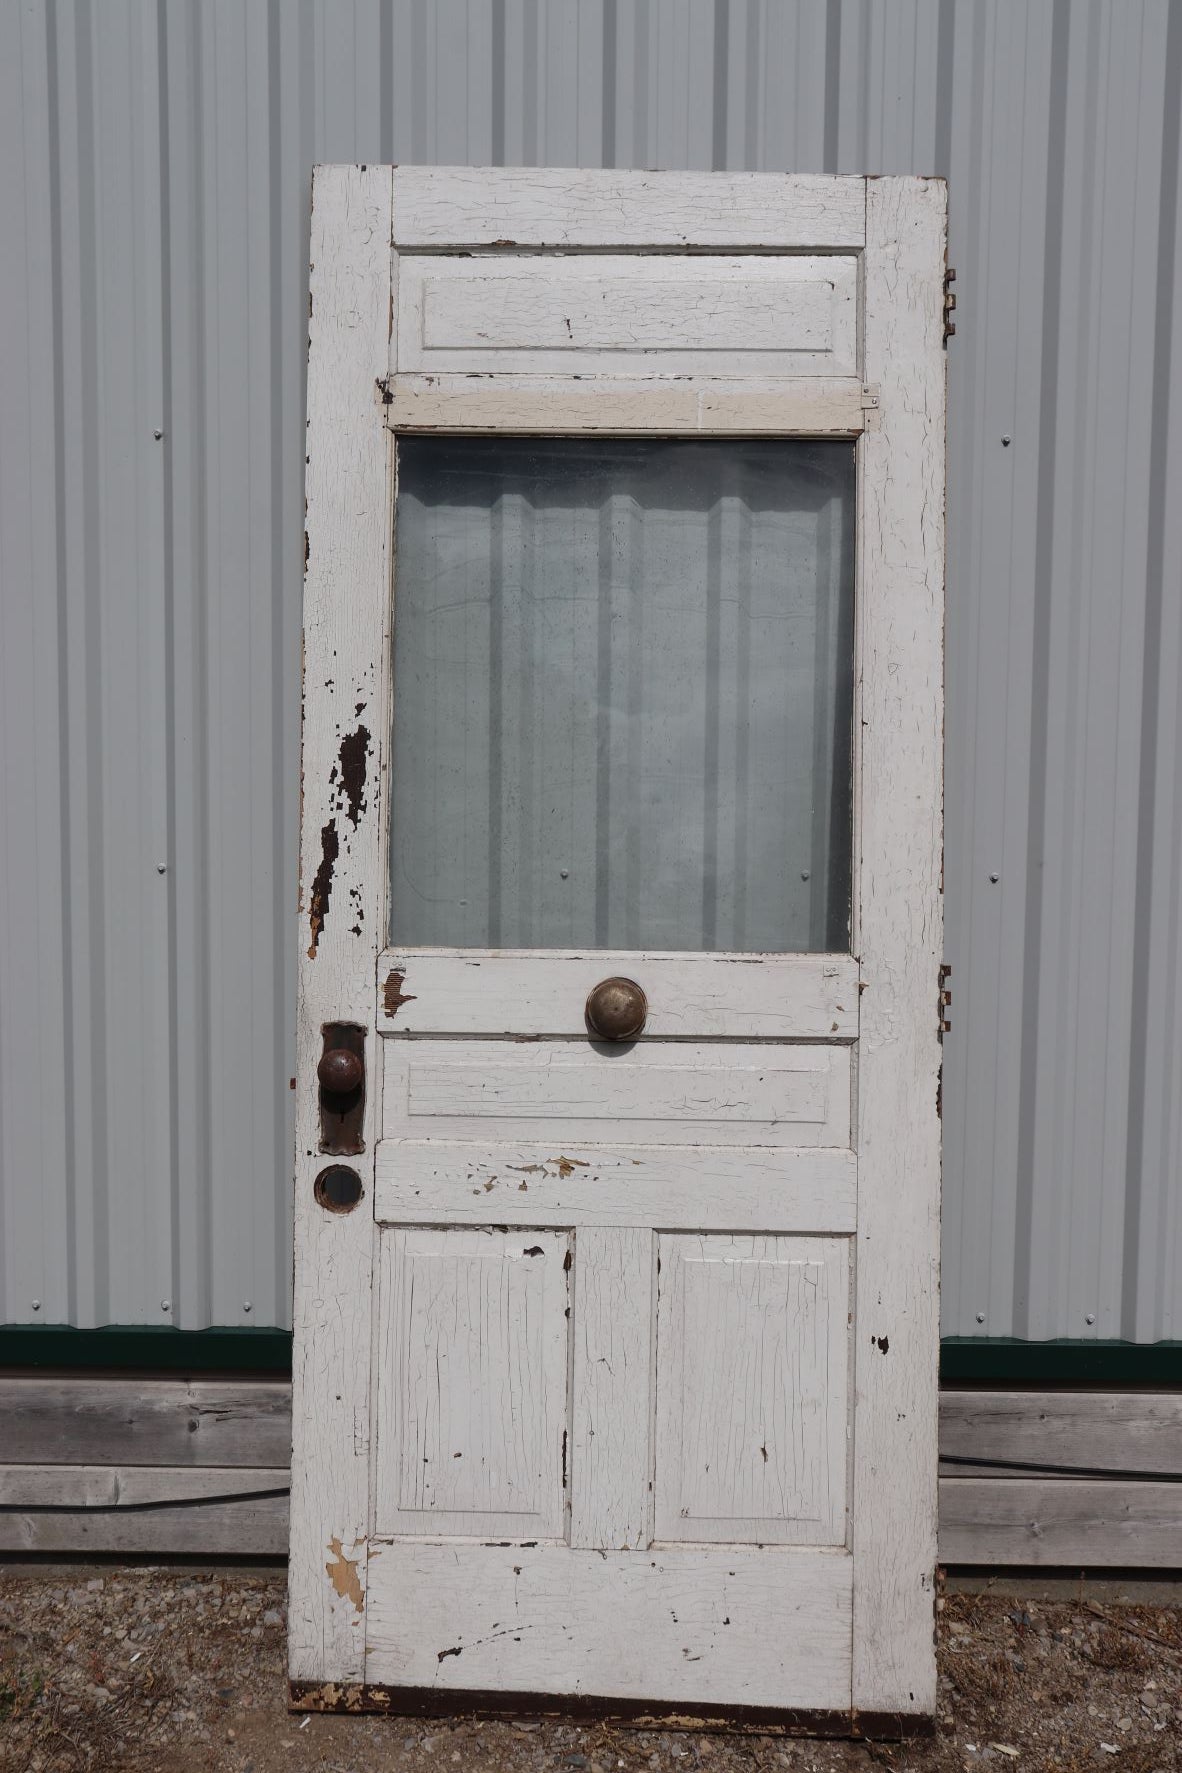 Old Wooden Exterior Door With Window